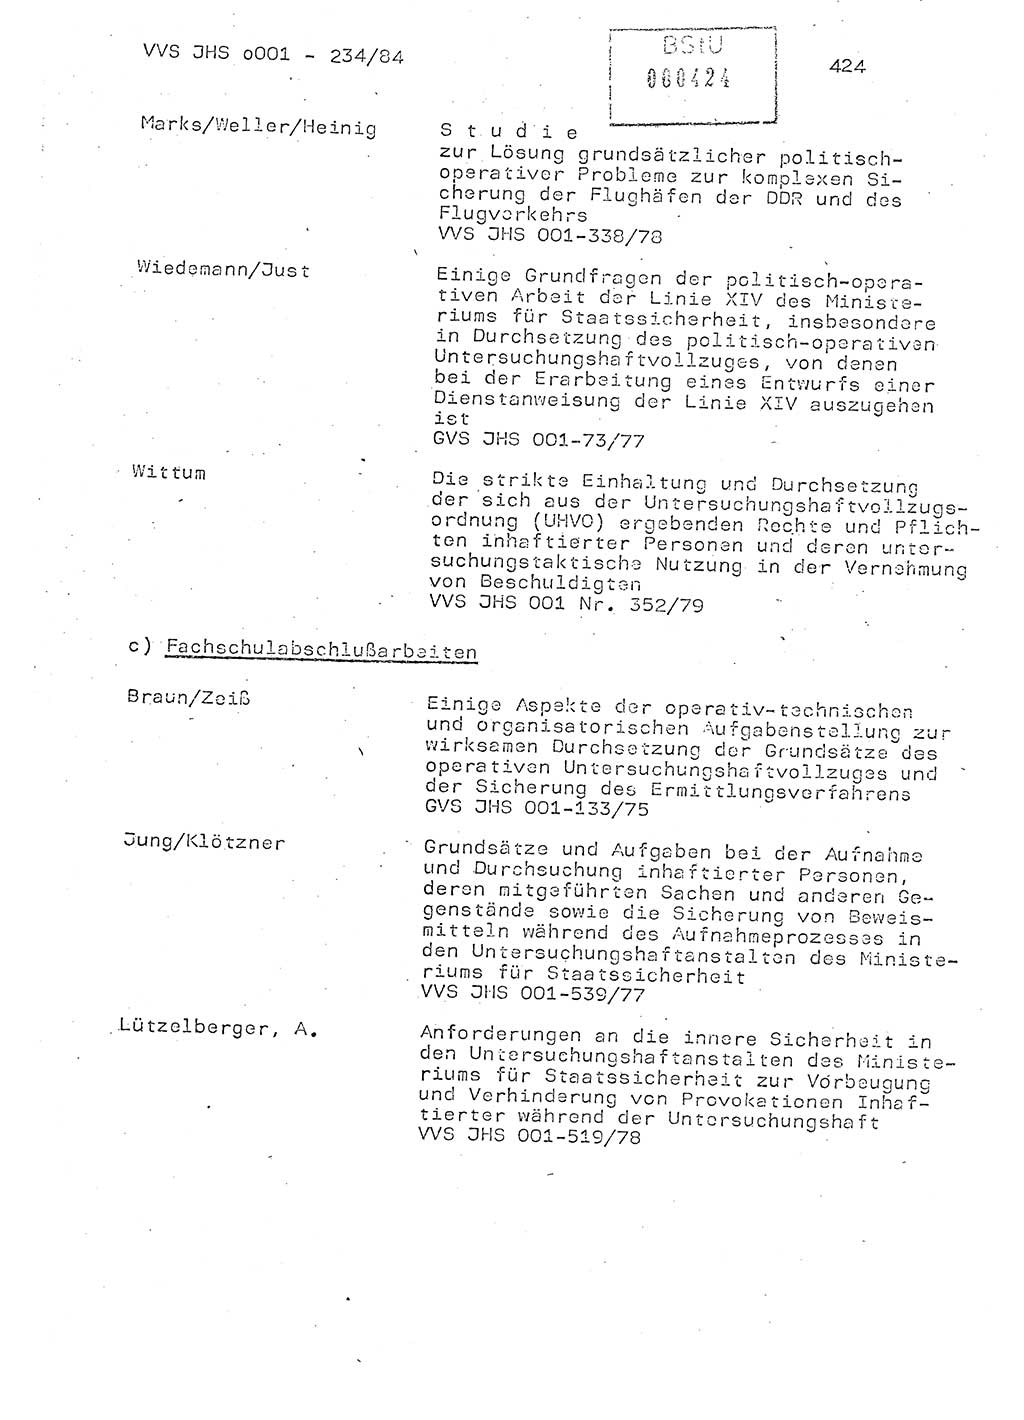 Dissertation Oberst Siegfried Rataizick (Abt. ⅩⅣ), Oberstleutnant Volkmar Heinz (Abt. ⅩⅣ), Oberstleutnant Werner Stein (HA Ⅸ), Hauptmann Heinz Conrad (JHS), Ministerium für Staatssicherheit (MfS) [Deutsche Demokratische Republik (DDR)], Juristische Hochschule (JHS), Vertrauliche Verschlußsache (VVS) o001-234/84, Potsdam 1984, Seite 424 (Diss. MfS DDR JHS VVS o001-234/84 1984, S. 424)